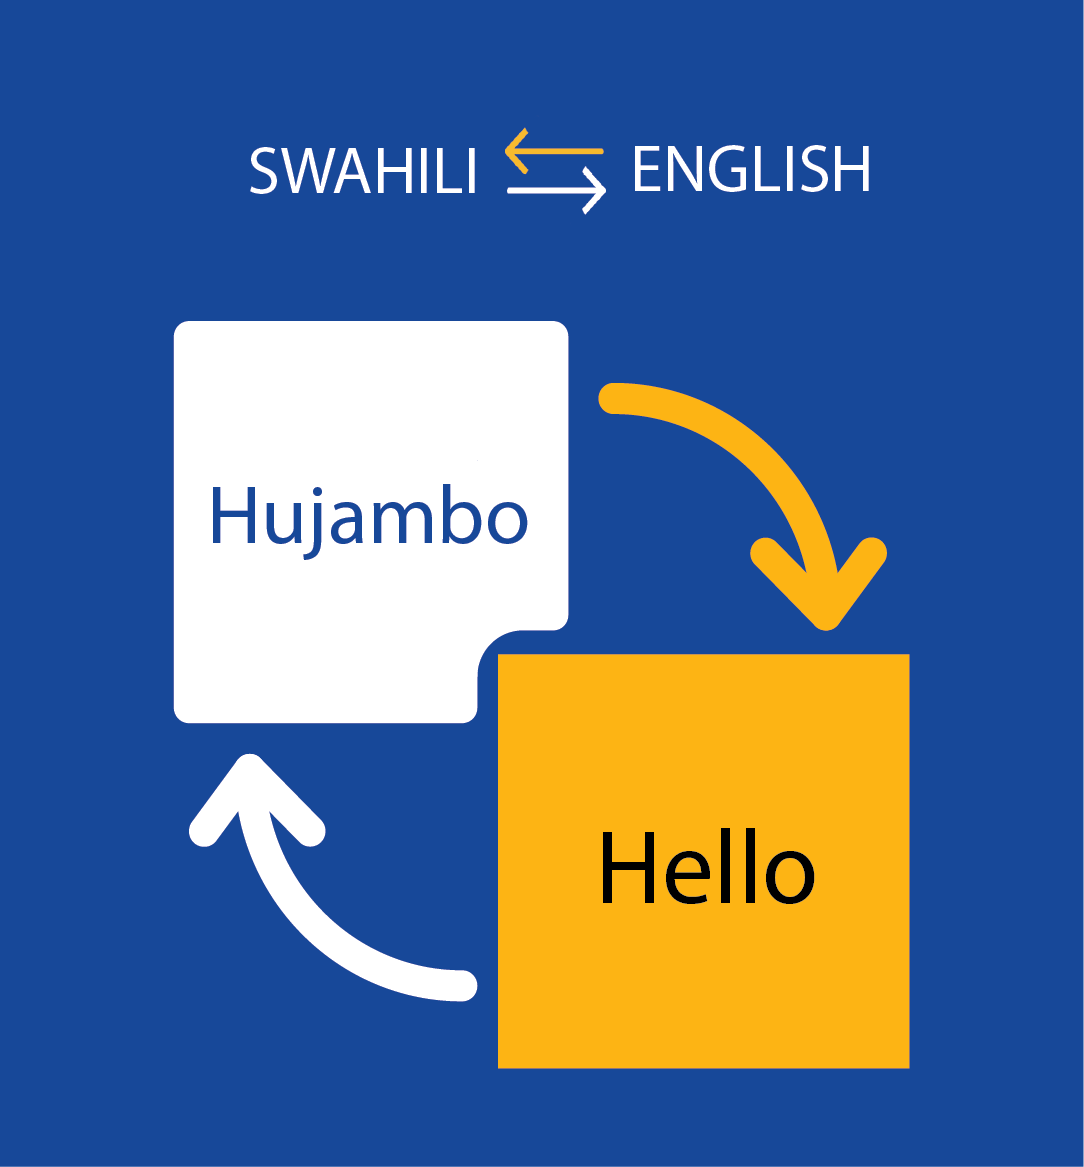 english-to-swahili-to-english-back